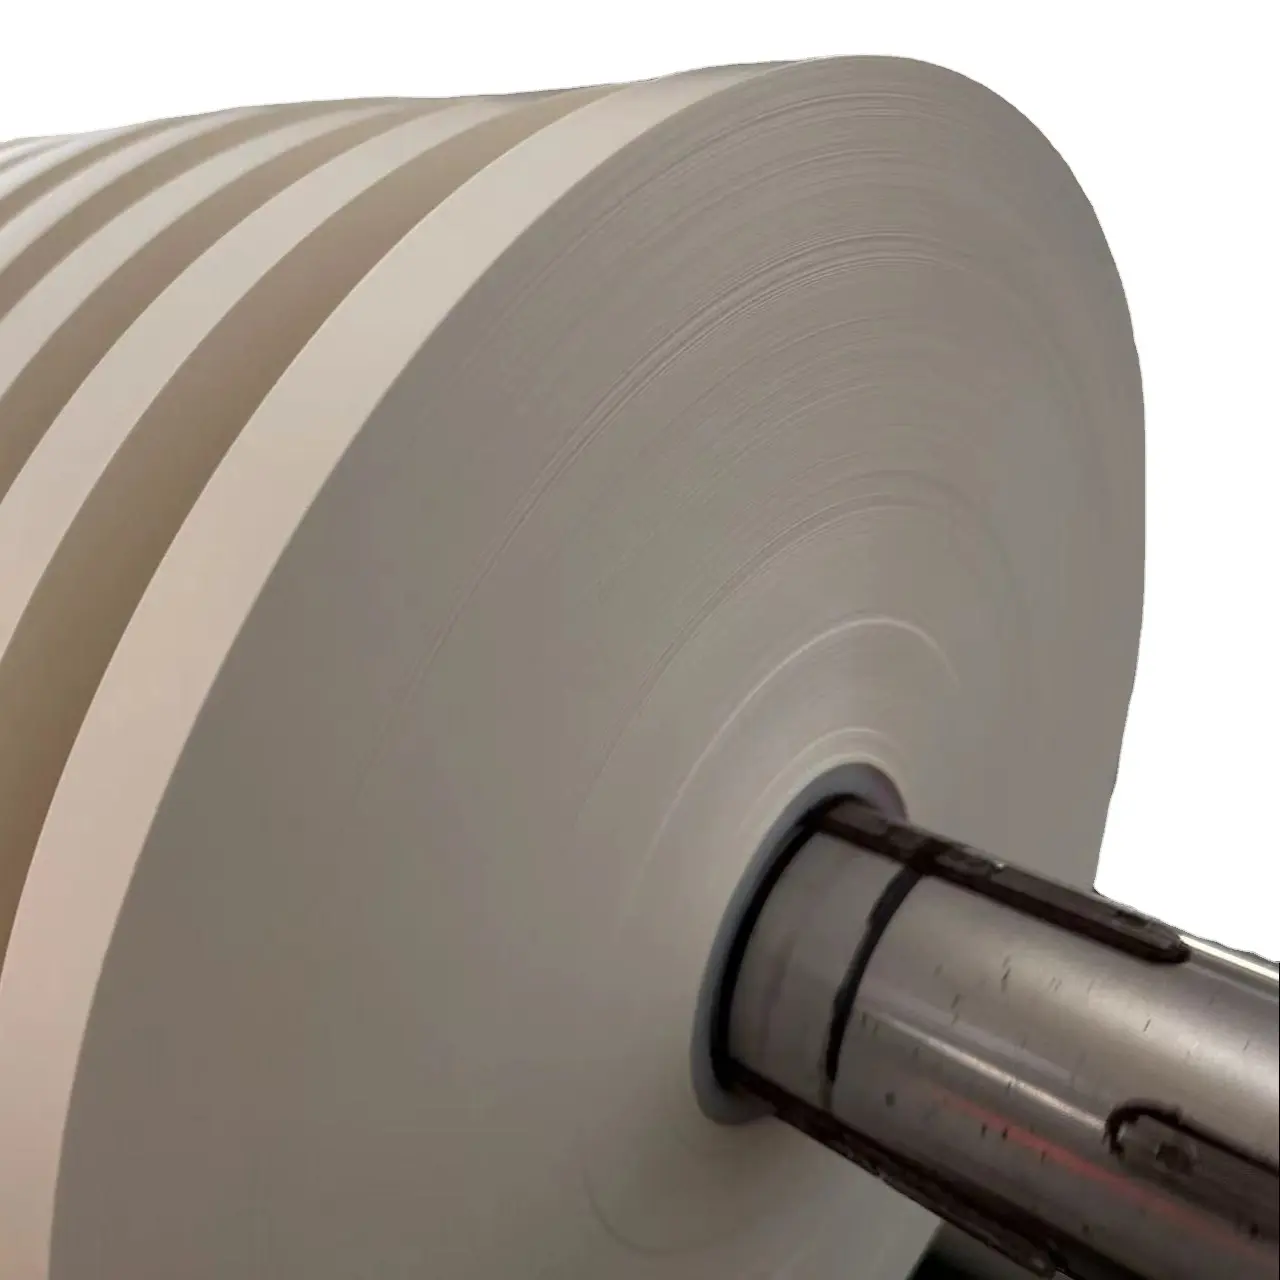 Werkseitige direkte Lieferung von weißem 62g/m² Trenn papier 35-45mm breites Streifen trennpapier Silikonöl papier